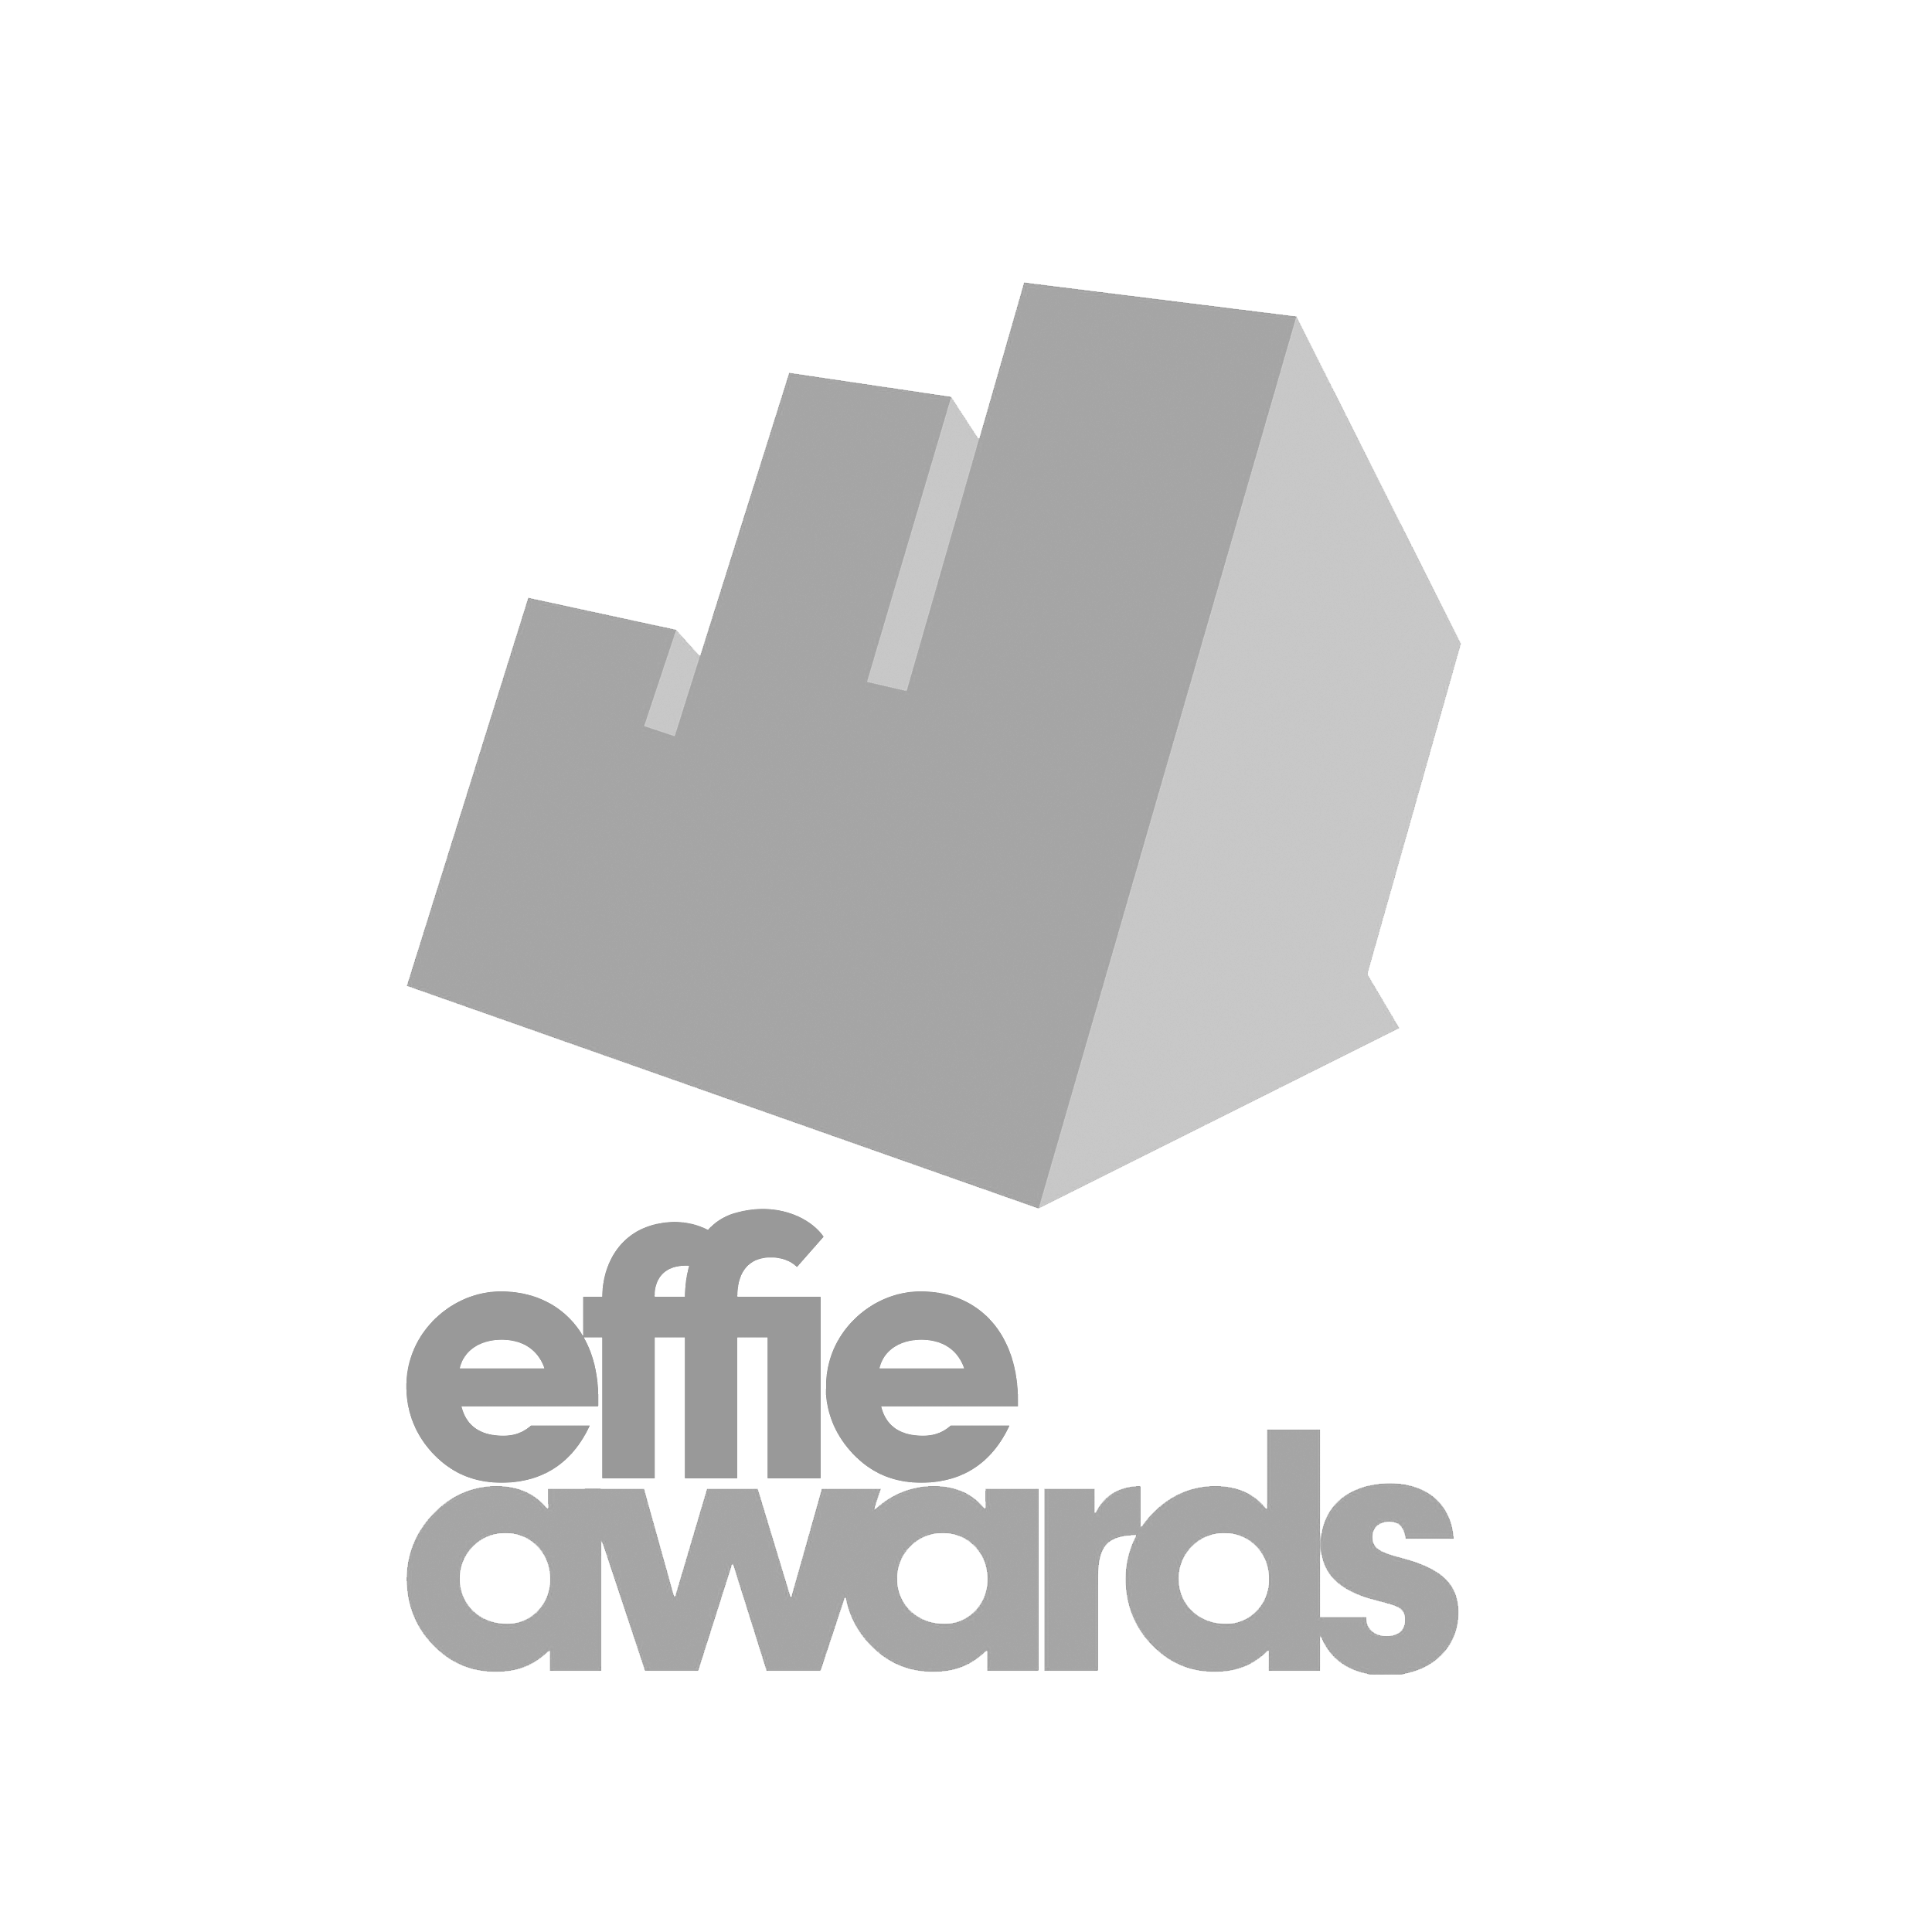 award_effie_v02.png